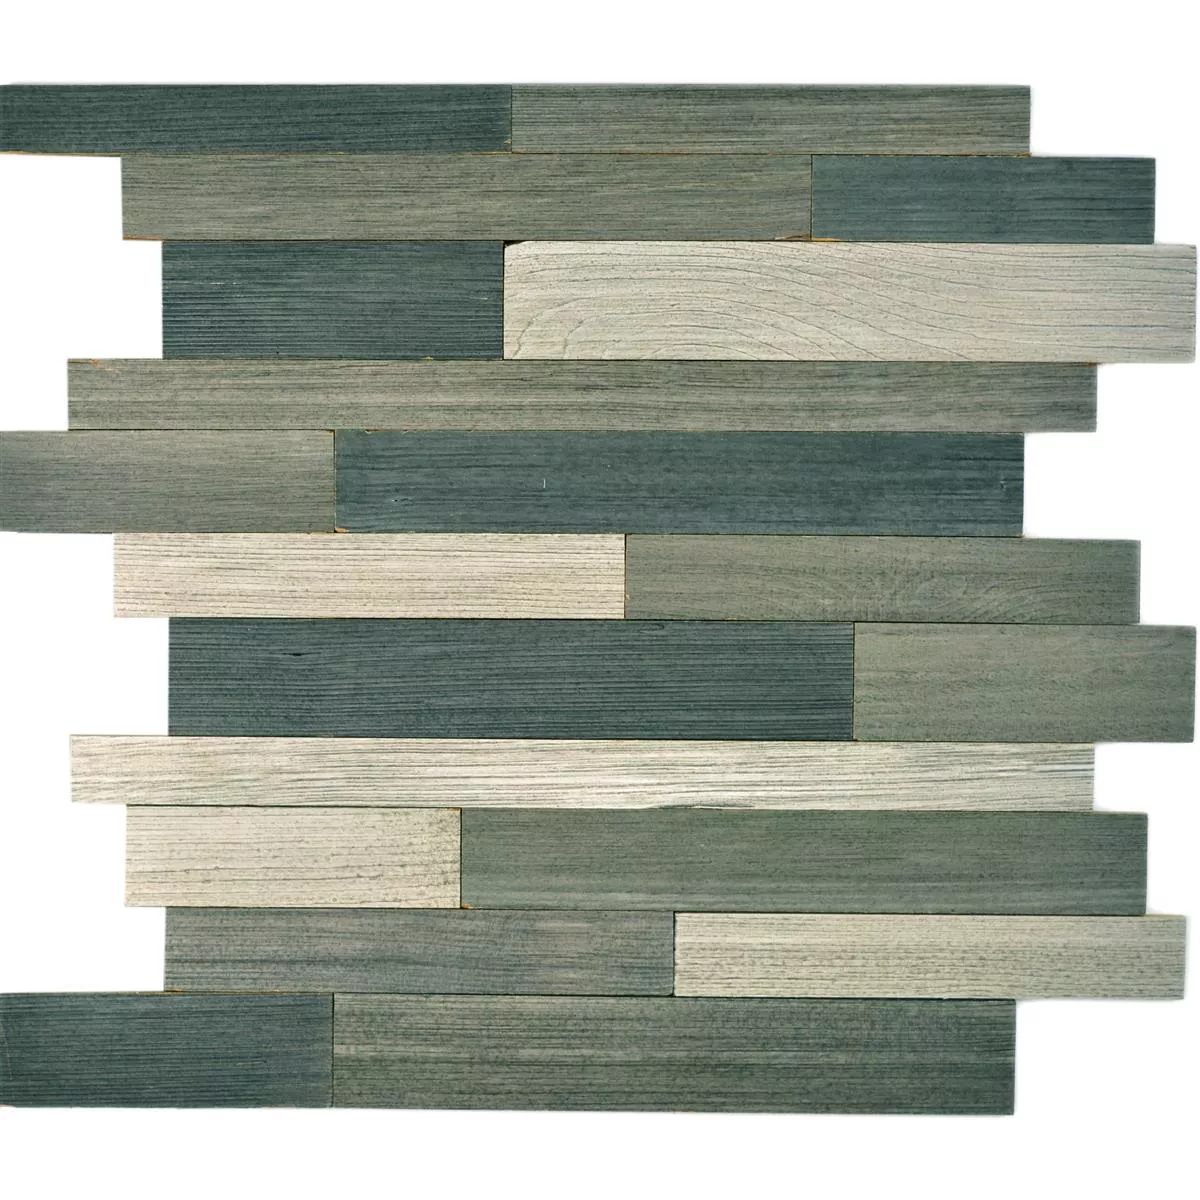 Sample Mosaic Tiles Wood Paris Pattern Self Adhesive Grey Mix